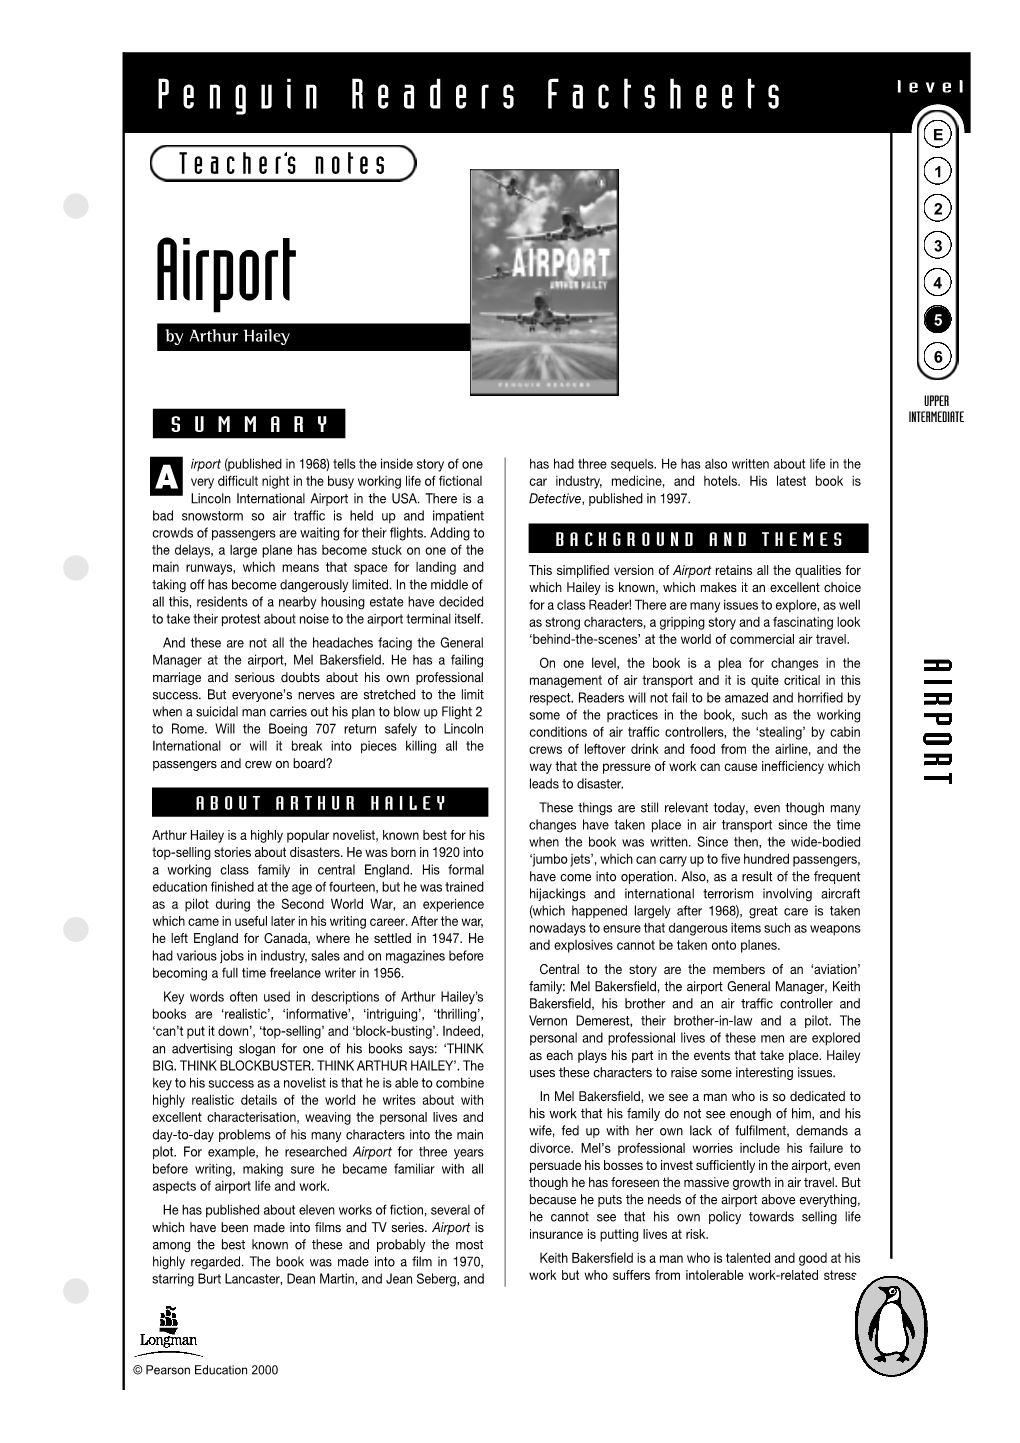 Airport 4 5 by Arthur Hailey 6